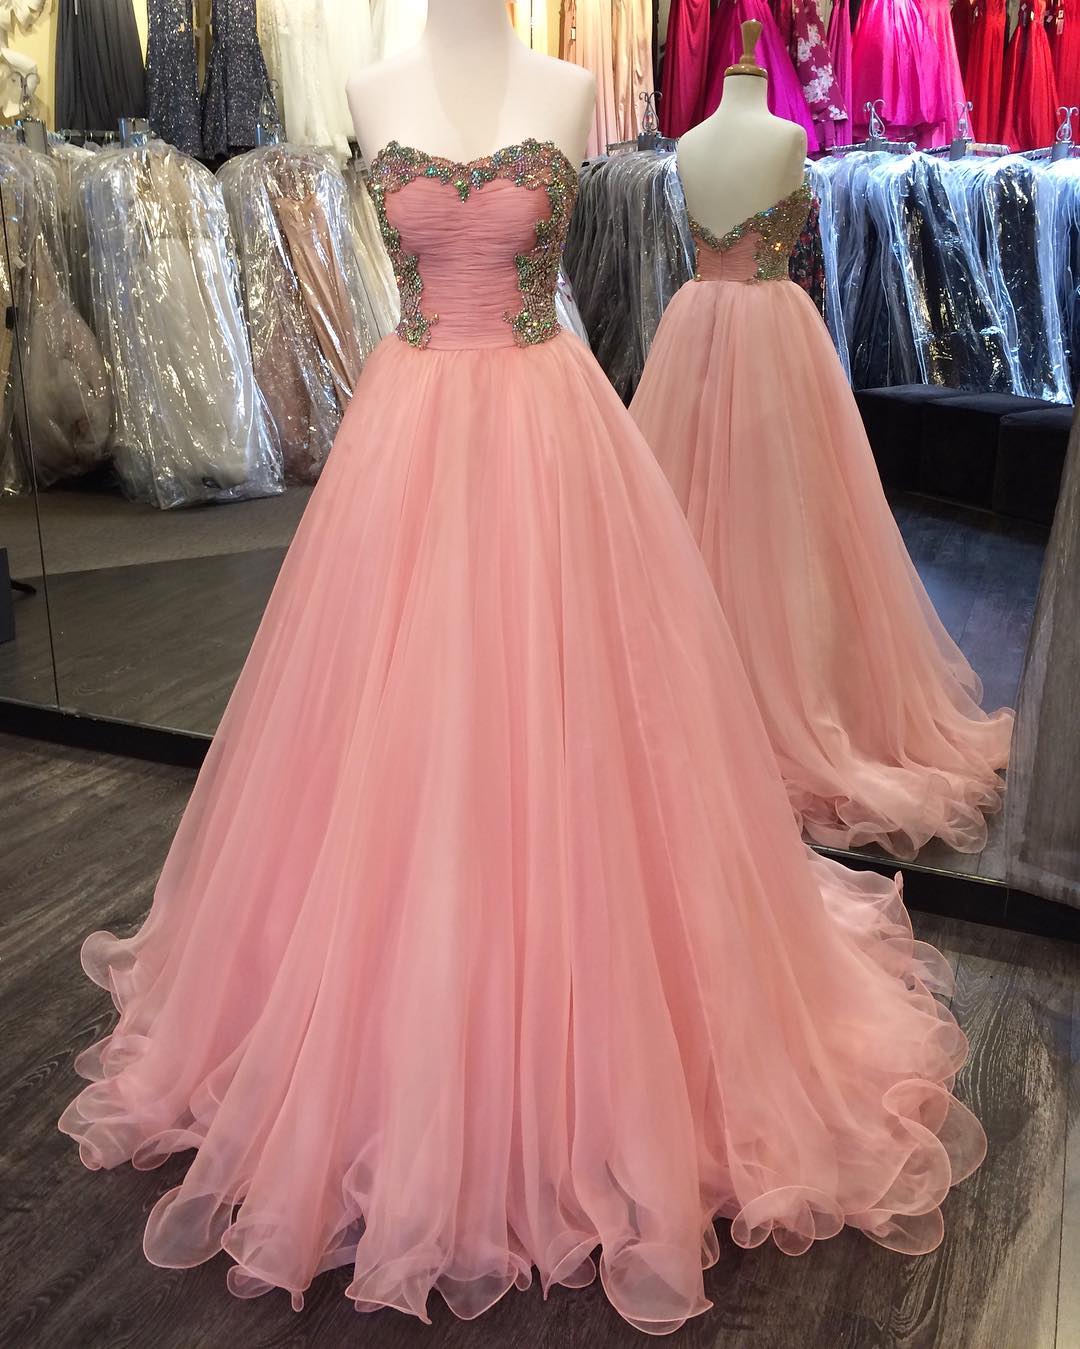 Strapless Prom Dress,organza Dresses,pink Prom Dresses,coral Prom Dress,ball Gowns Prom Dresses 2017